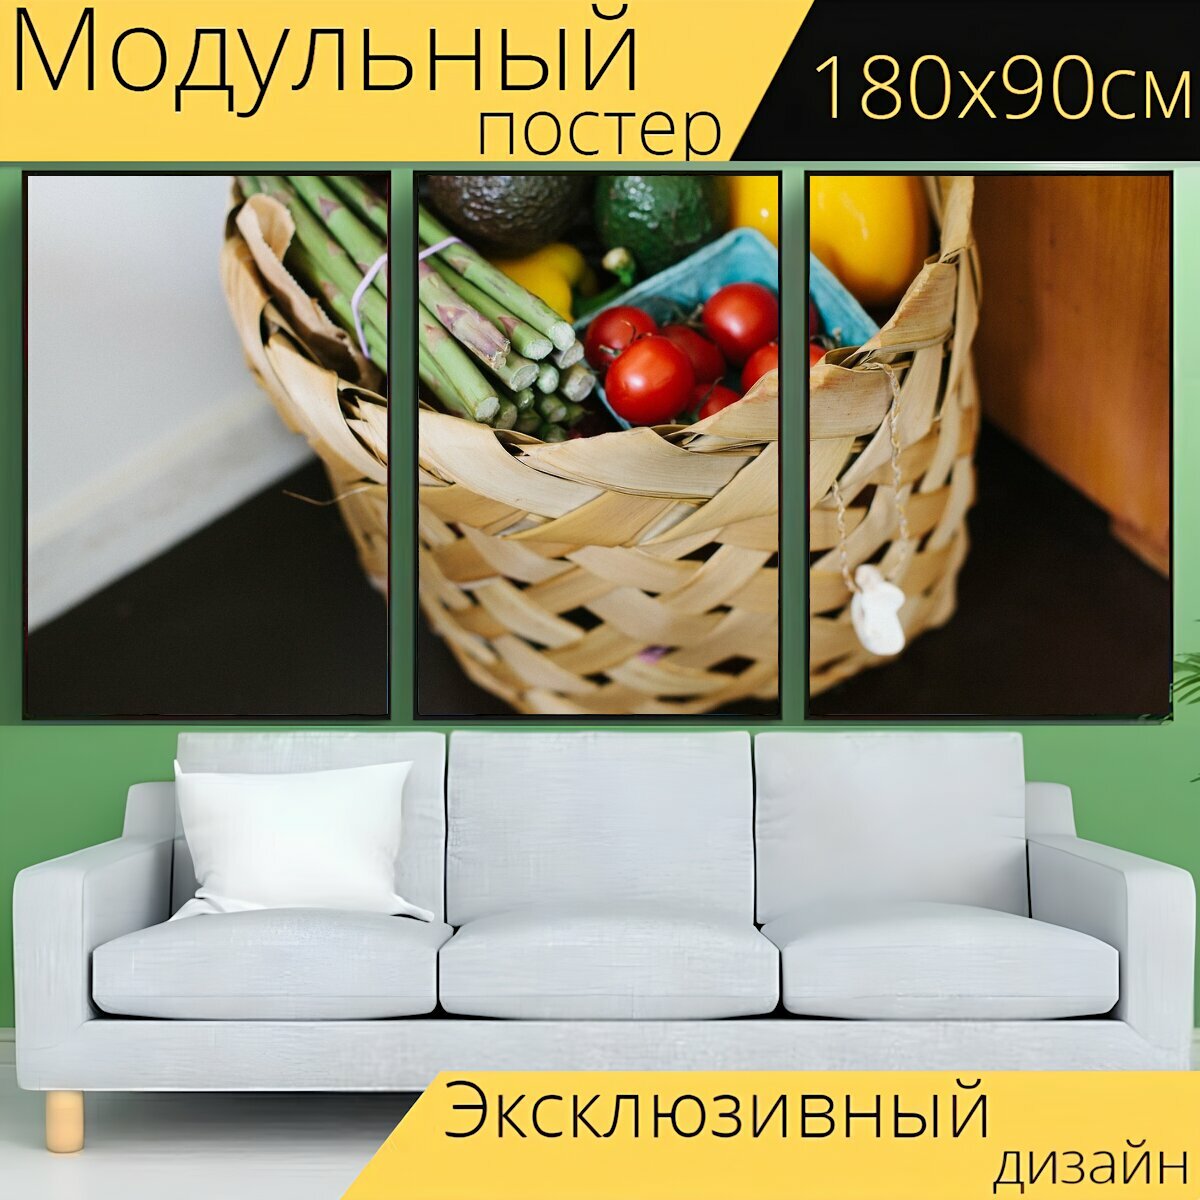 Модульный постер "Корзина, продукты, овощи" 180 x 90 см. для интерьера